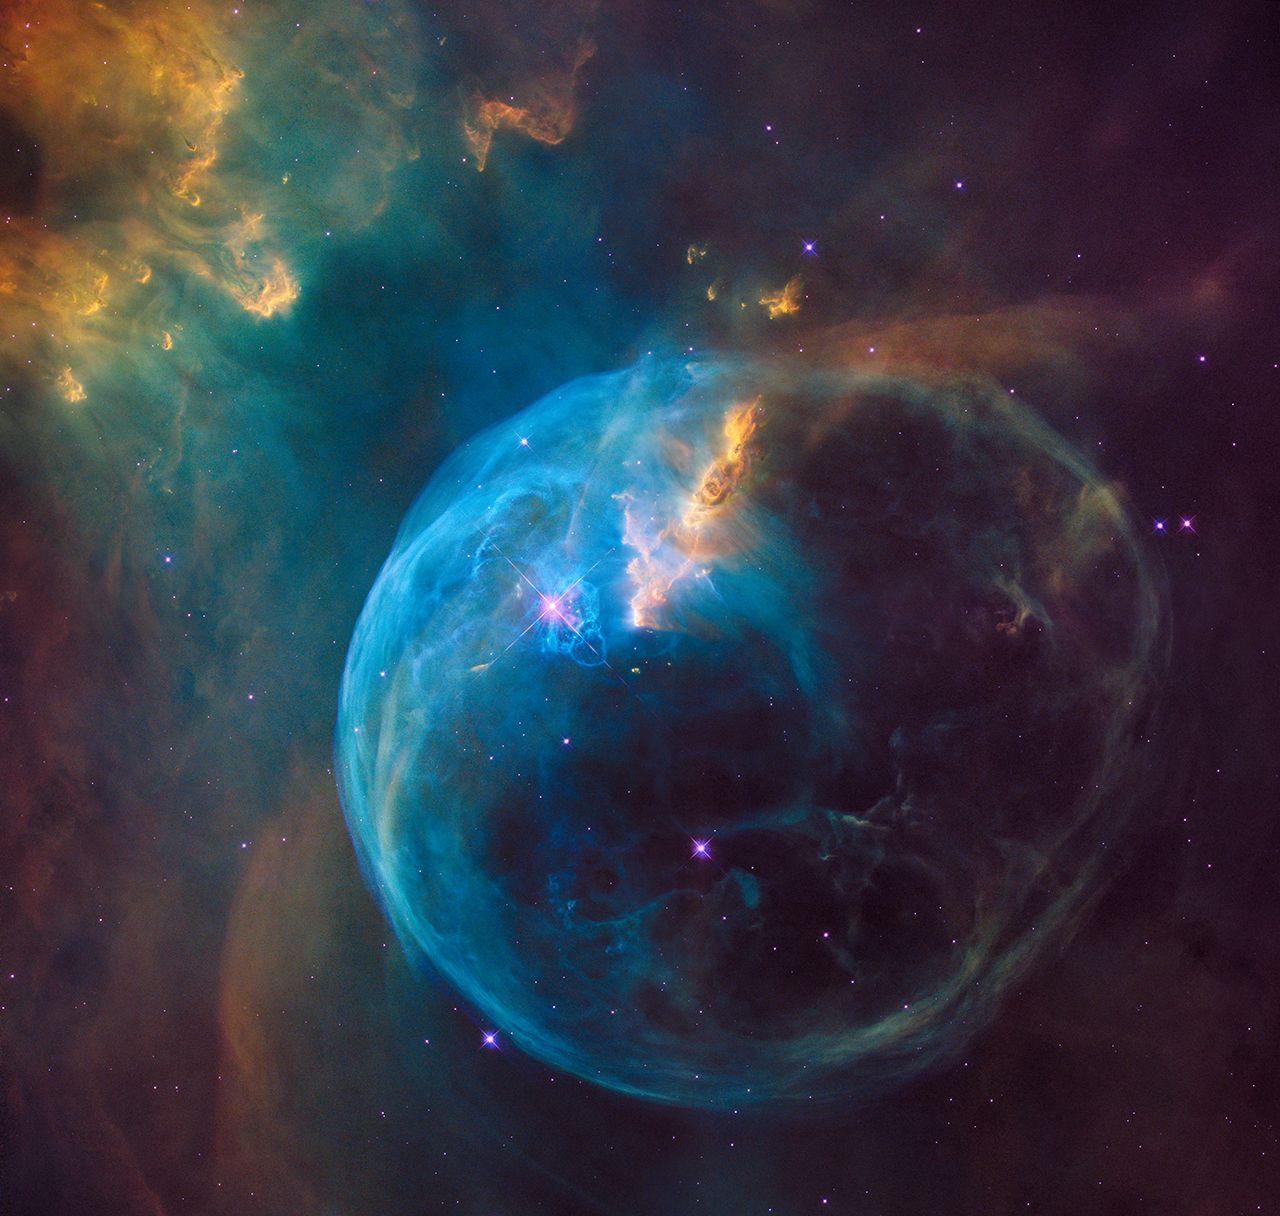 Zum 26. Geburtstag des Teleskops hat die NASA ein ganz besonderes Foto veröffentlicht. Es zeigt die so genannte Bubble Nebula. Diese ist sieben Lichtjahre breit und etwa 7.100 Lichtjahre von der Erde entfernt. Das Foto zeigt einen jungen Stern bei seiner Entstehung. Später soll er 45-mal größer werden, als unsere Sonne.